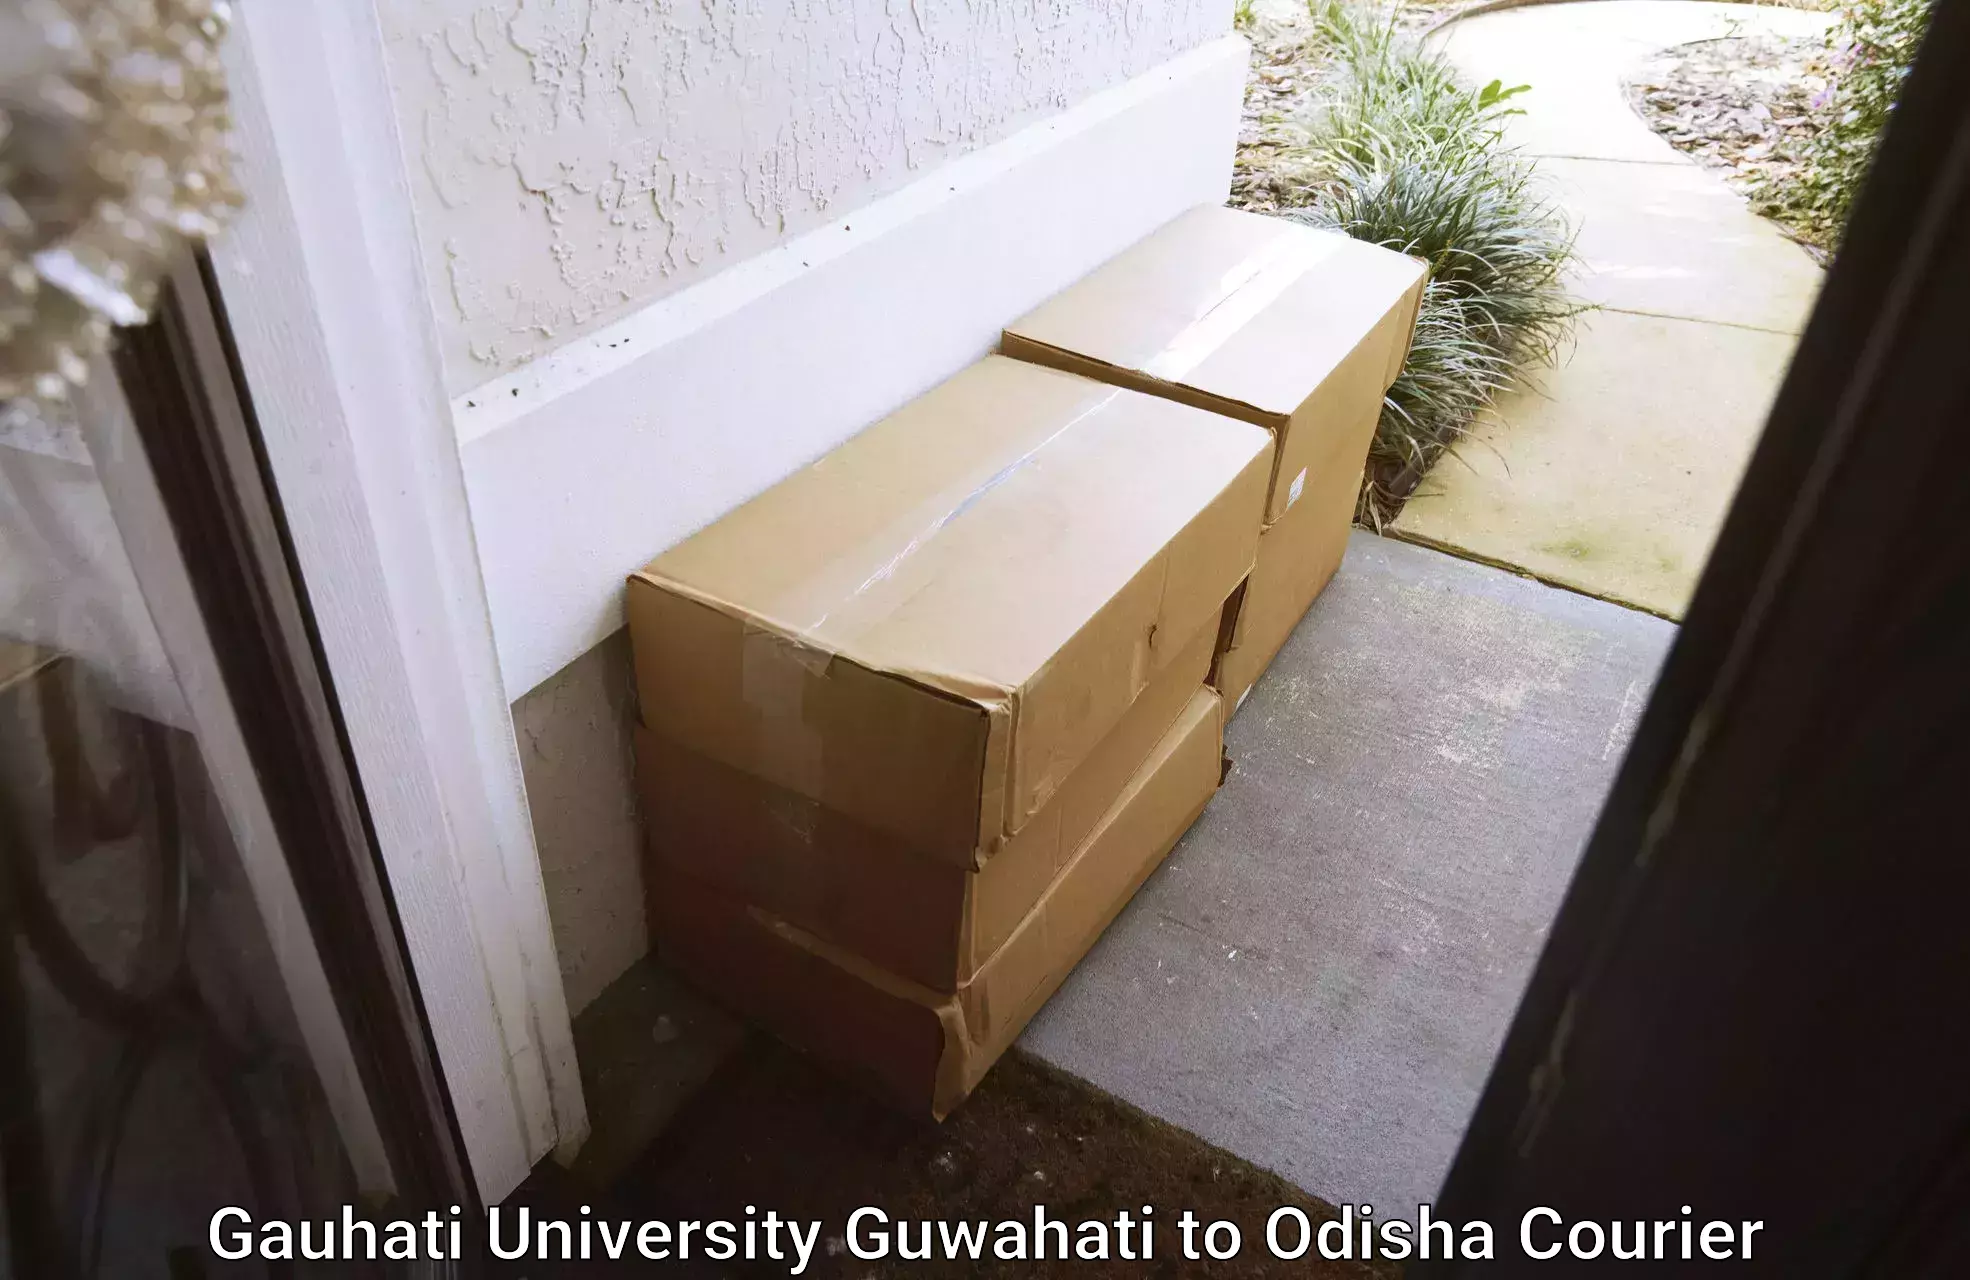 Door-to-door shipment in Gauhati University Guwahati to Jajpur